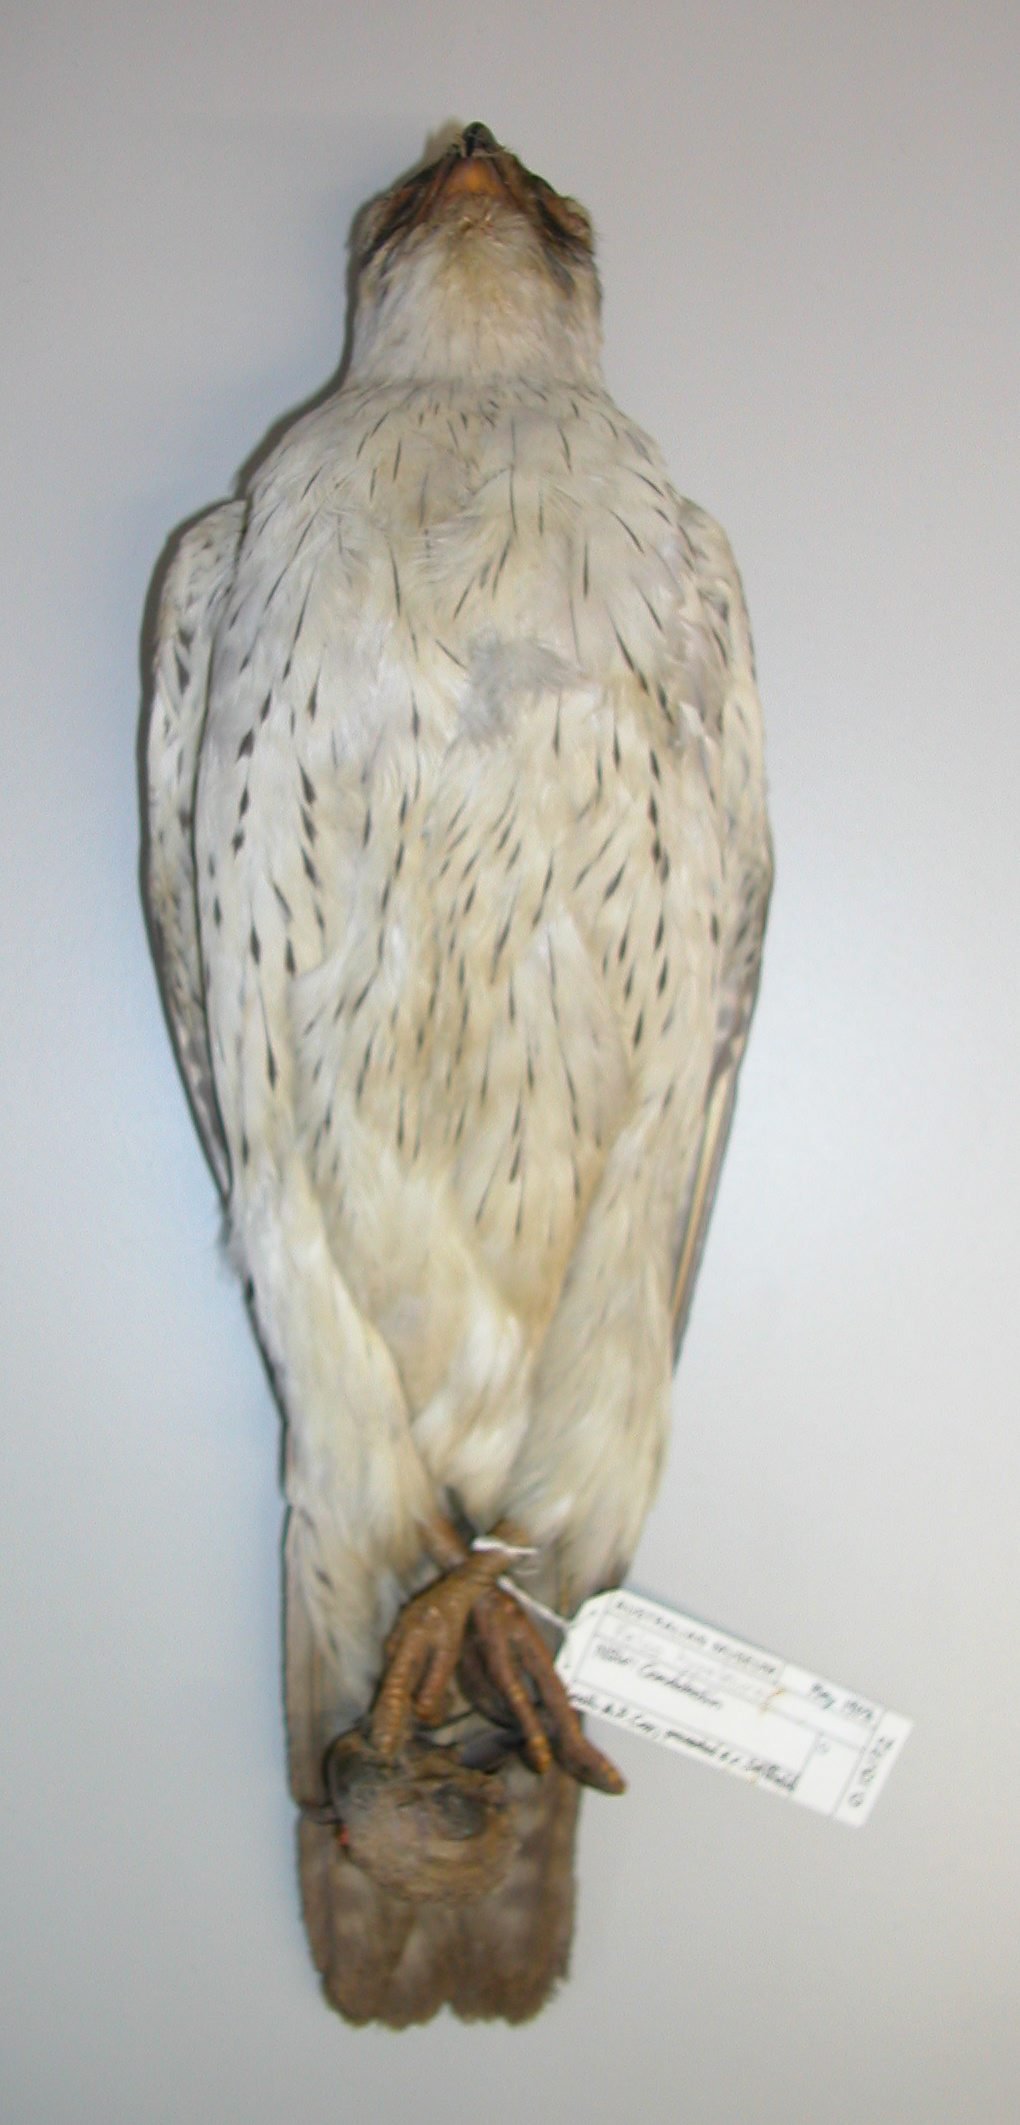 O.13172 Falco hypoleucos and skull of Barnardius zonarius barnardi